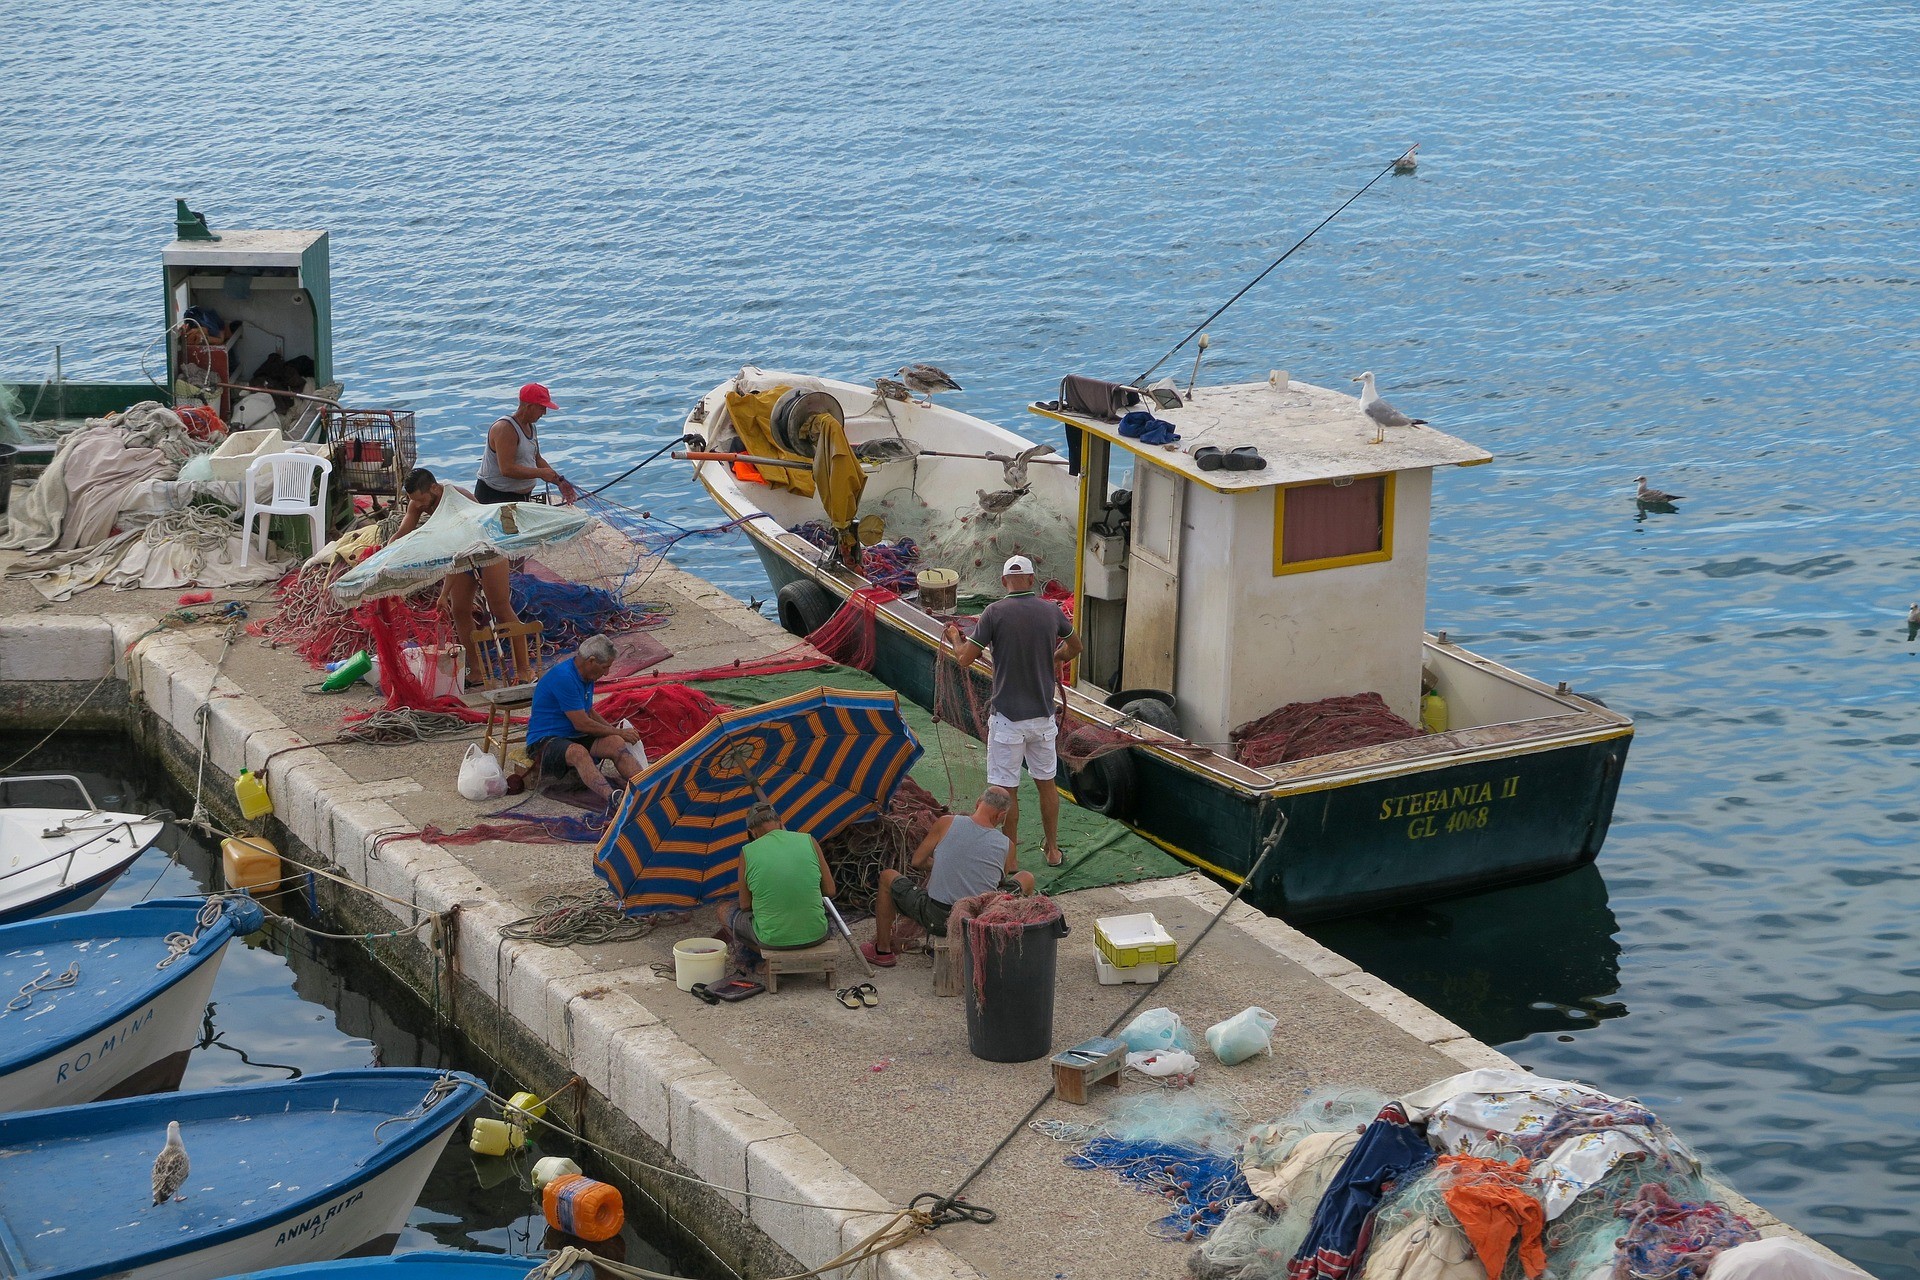 Pescatori a lavoro, Gallipoli